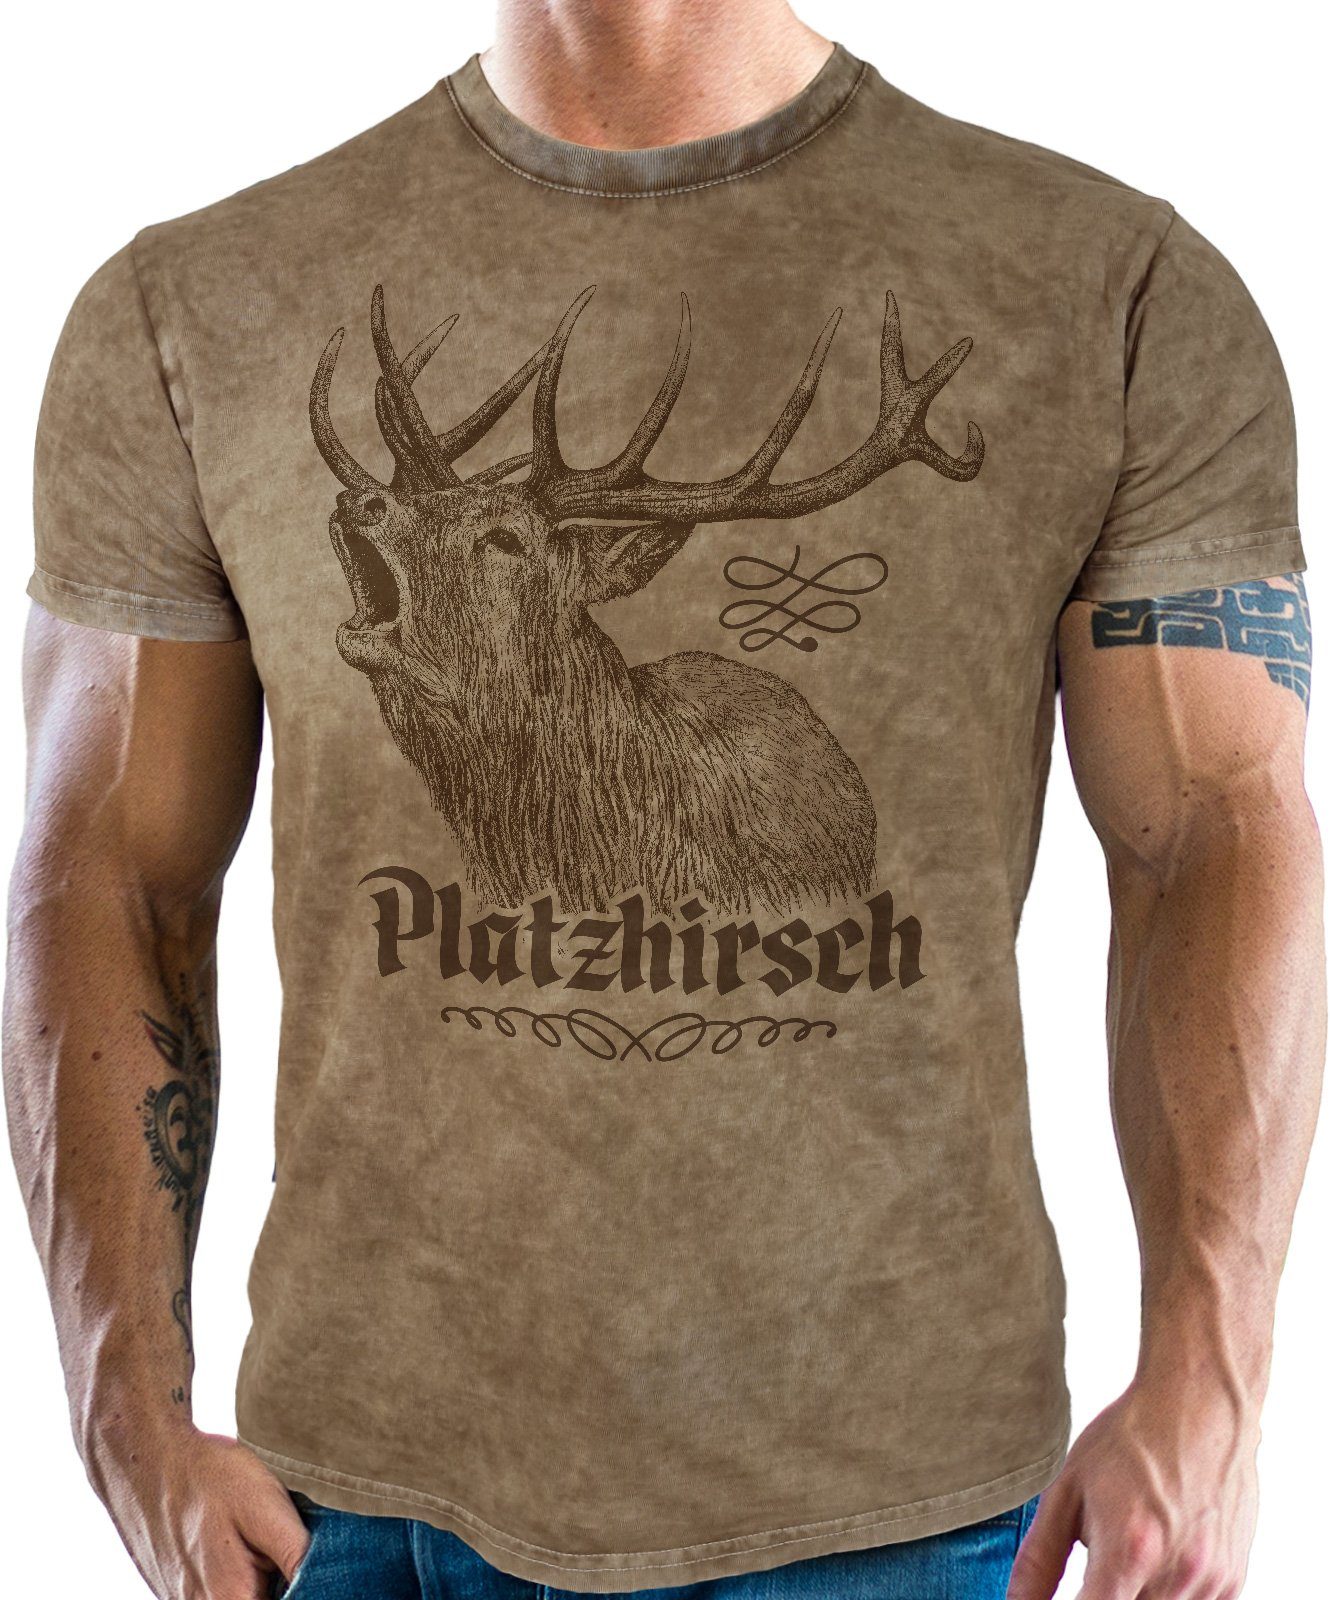 LOBO NEGRO® Trachtenshirt für washed used Bayern Platzhirsch retro Look: vintage echte Fans im